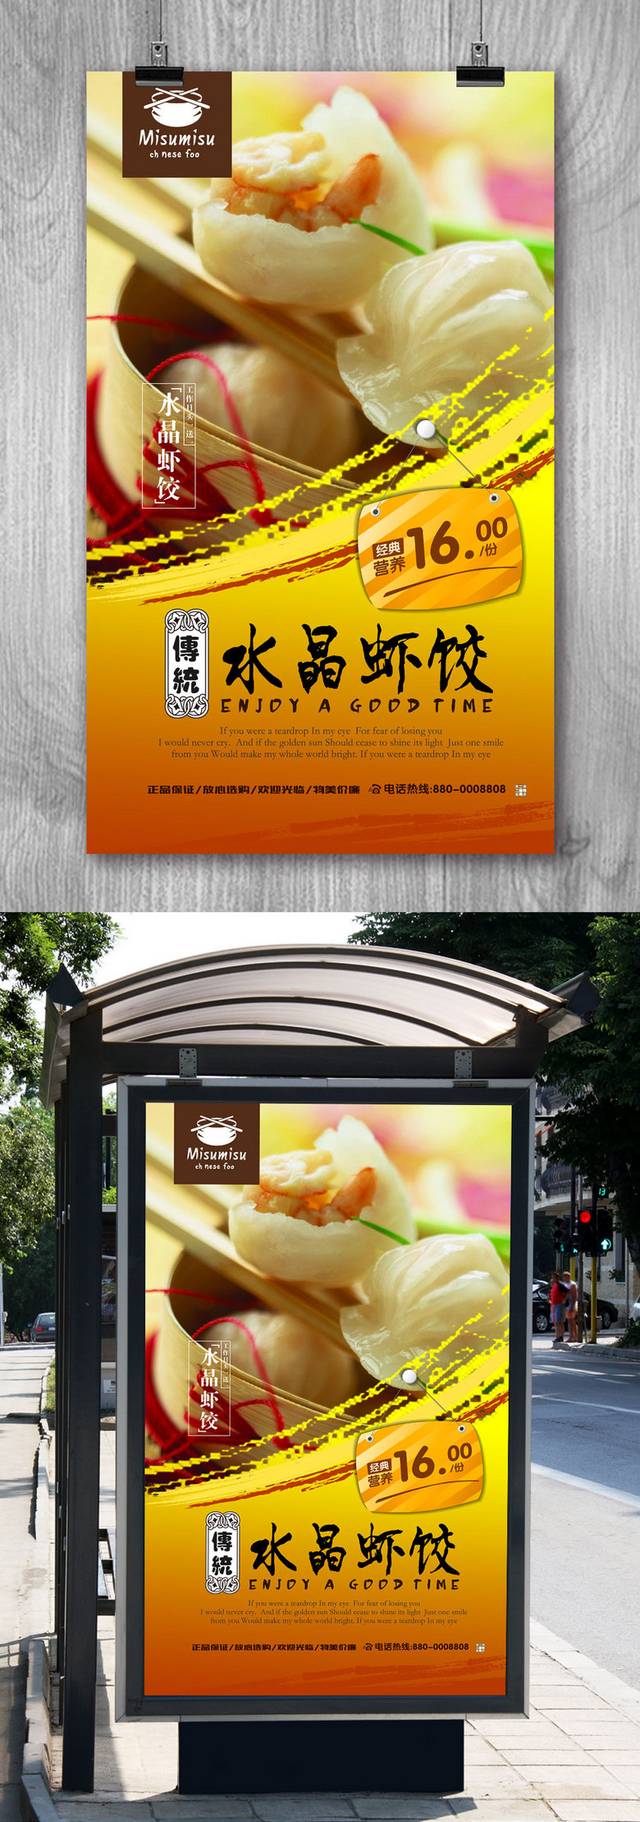 原创水晶虾饺宣传海报设计